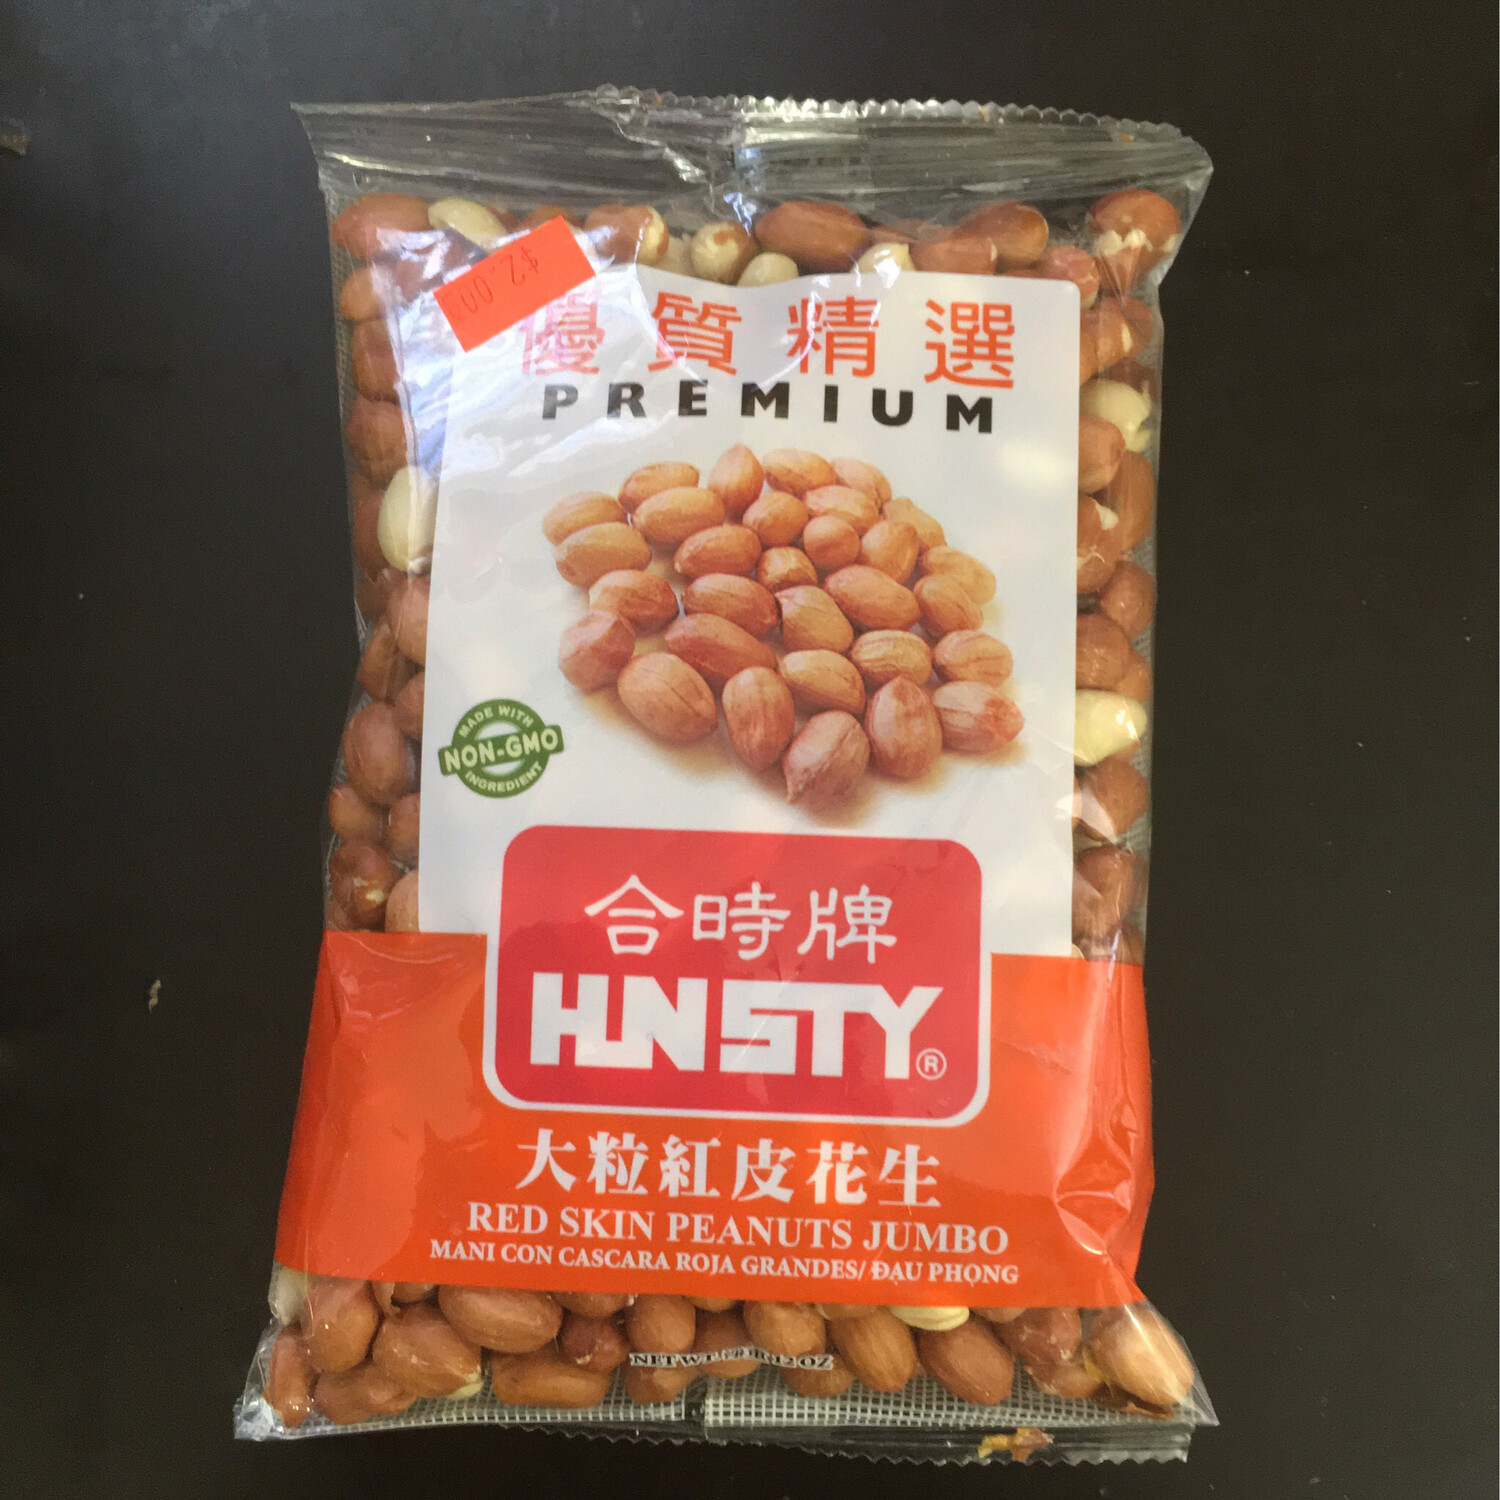 Raw Nut